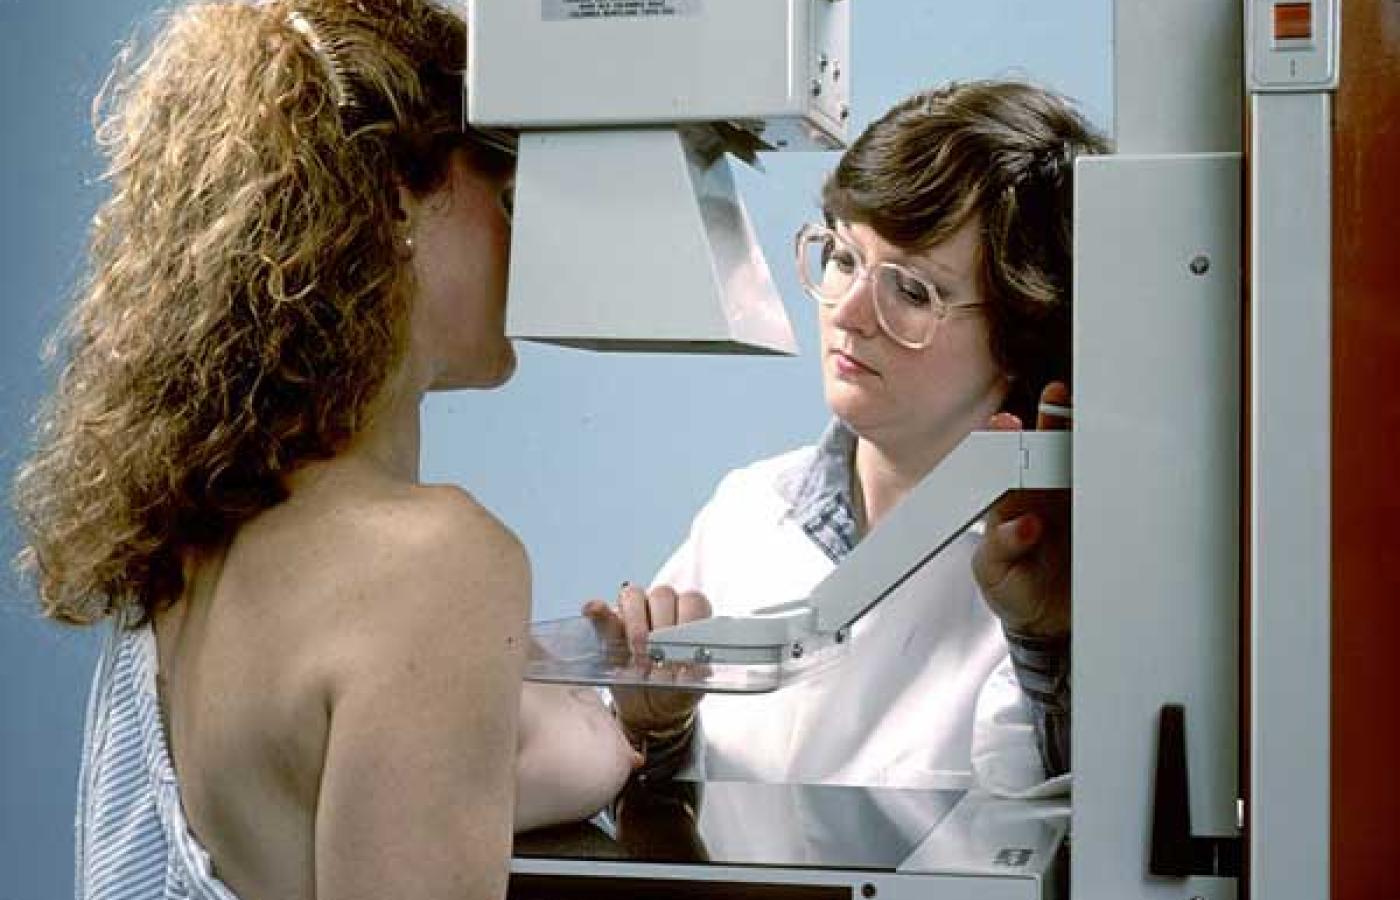 Po zmianie kodeksu pracy kobiety będą musiały wykonywać mammografię obowiązkowo w ramach badań okresowych. Fot. Wikipedia